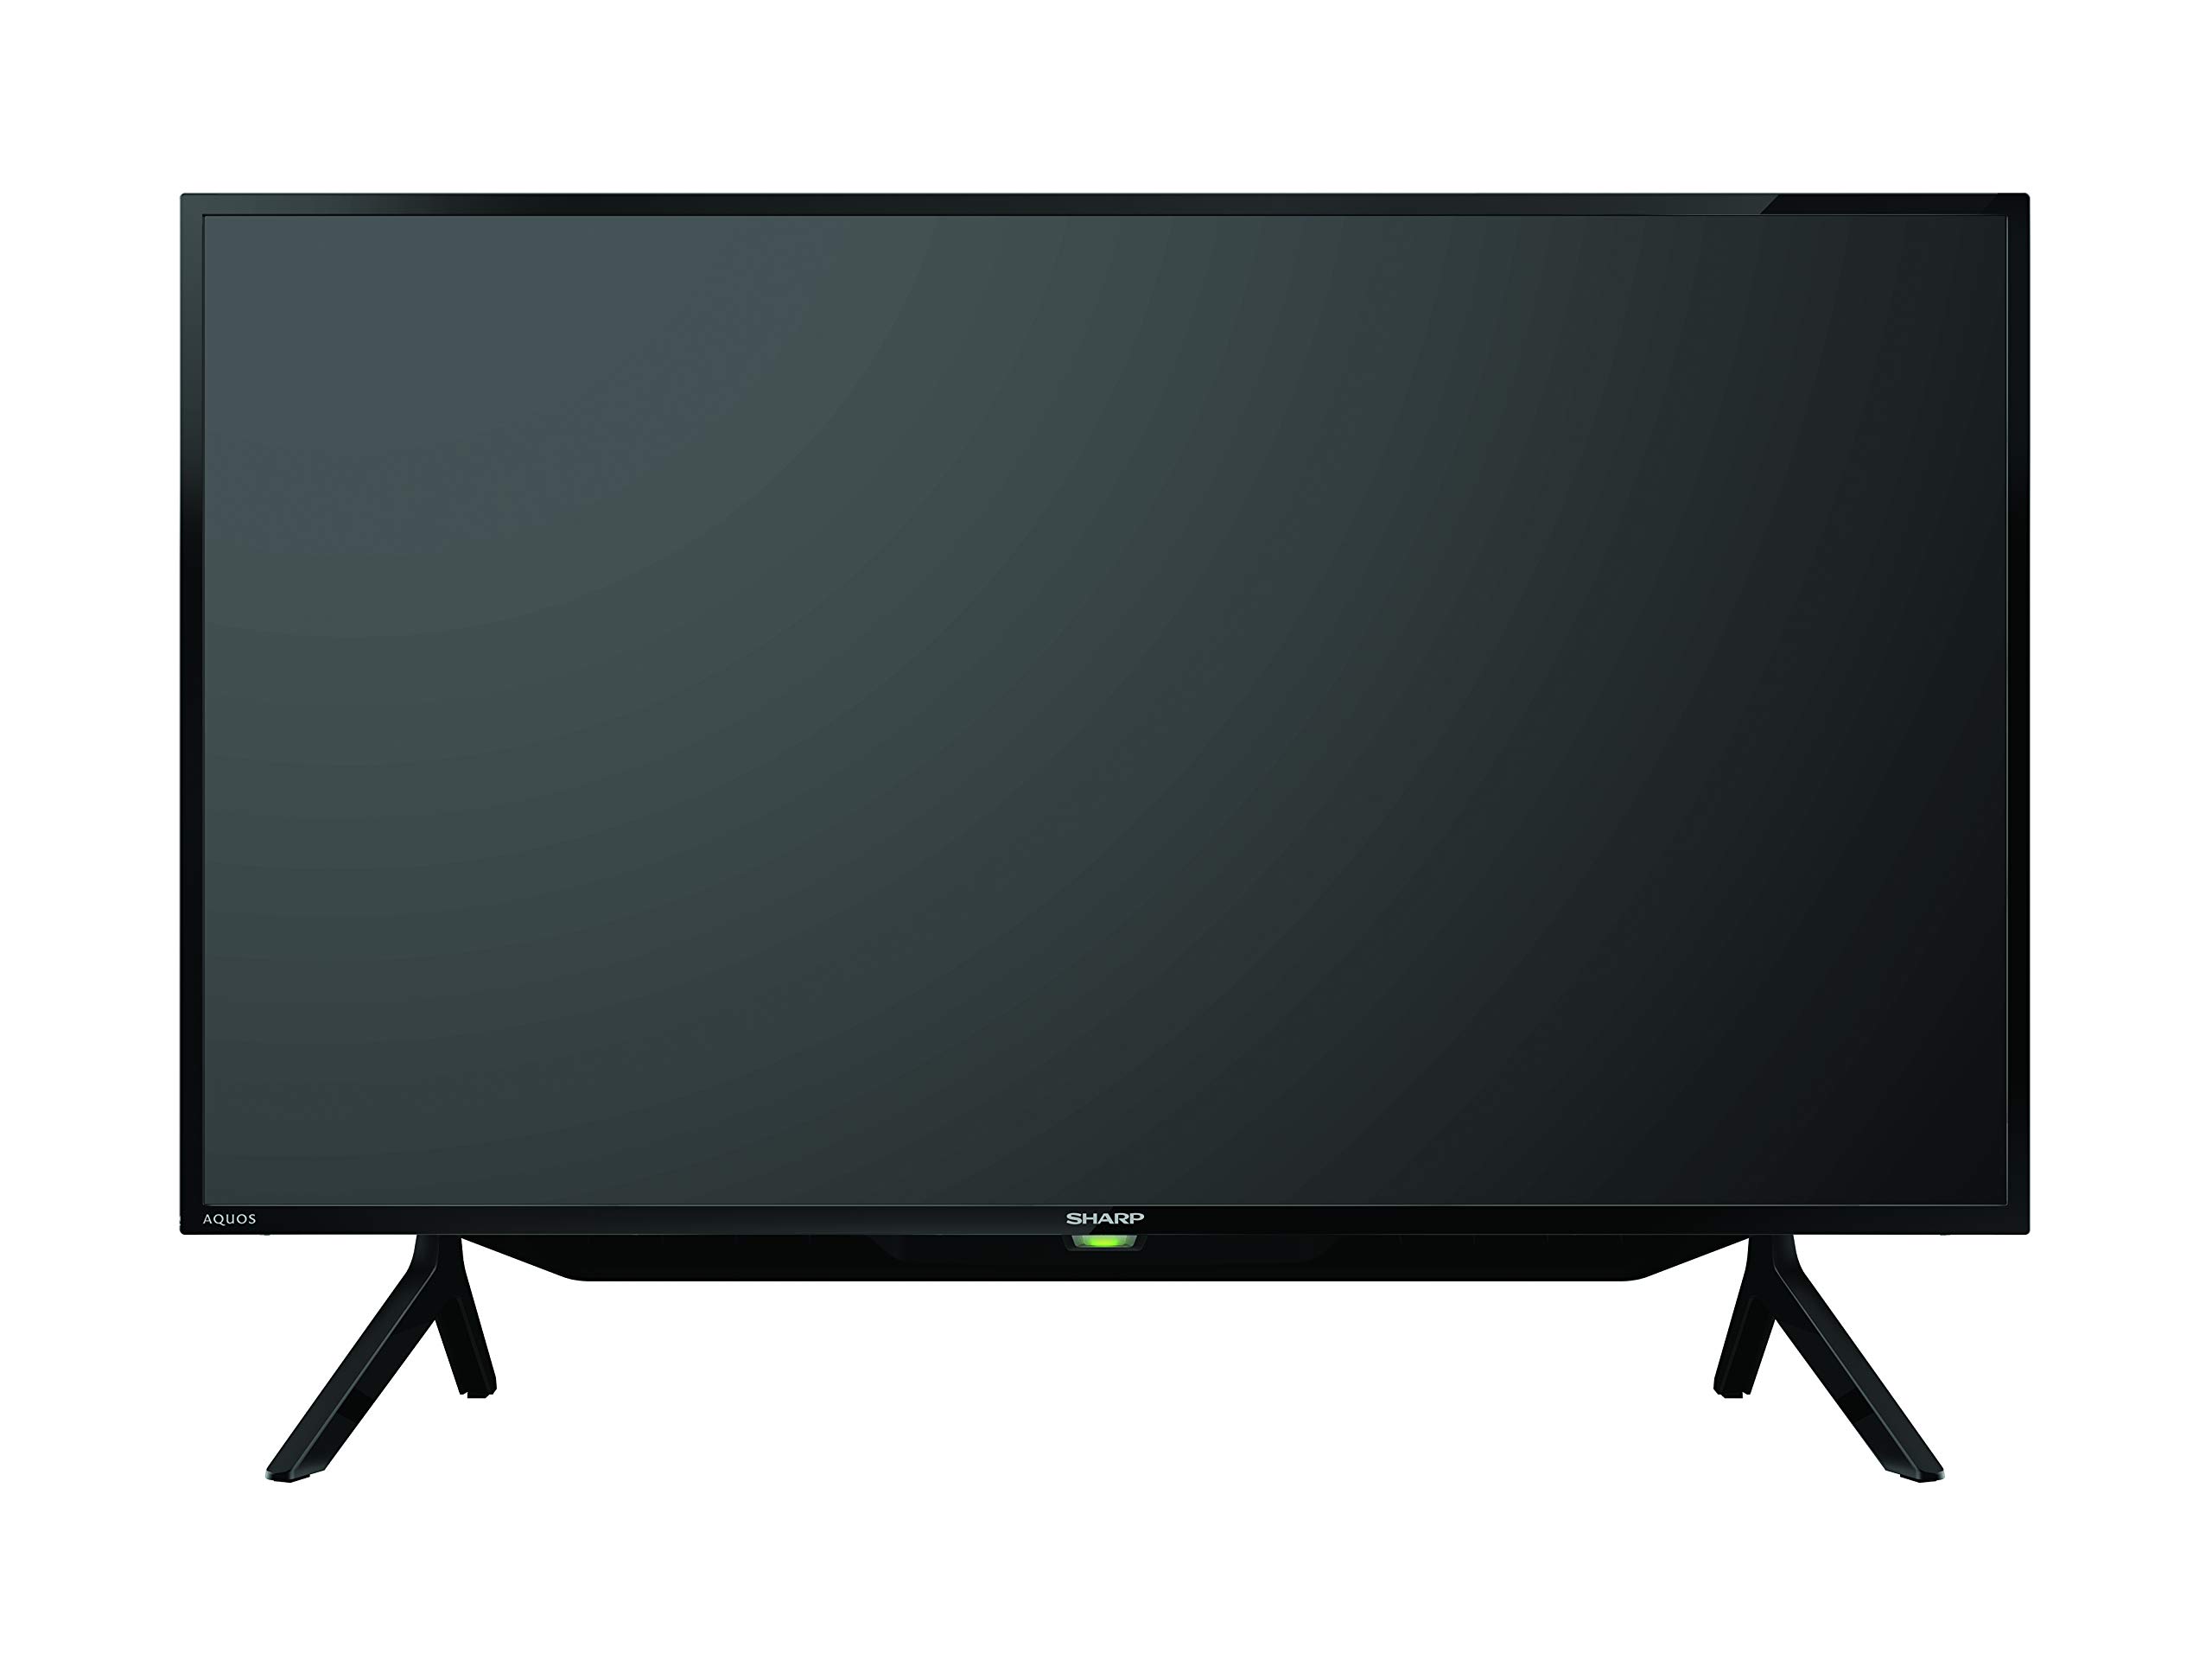 42นิ้วดิจิตอลราคาถูก   SHARP LED FULL HD  DIGTAL TV รุ่น2T-C42BD1X , 2TC42BD1X , 2T C42BD1X